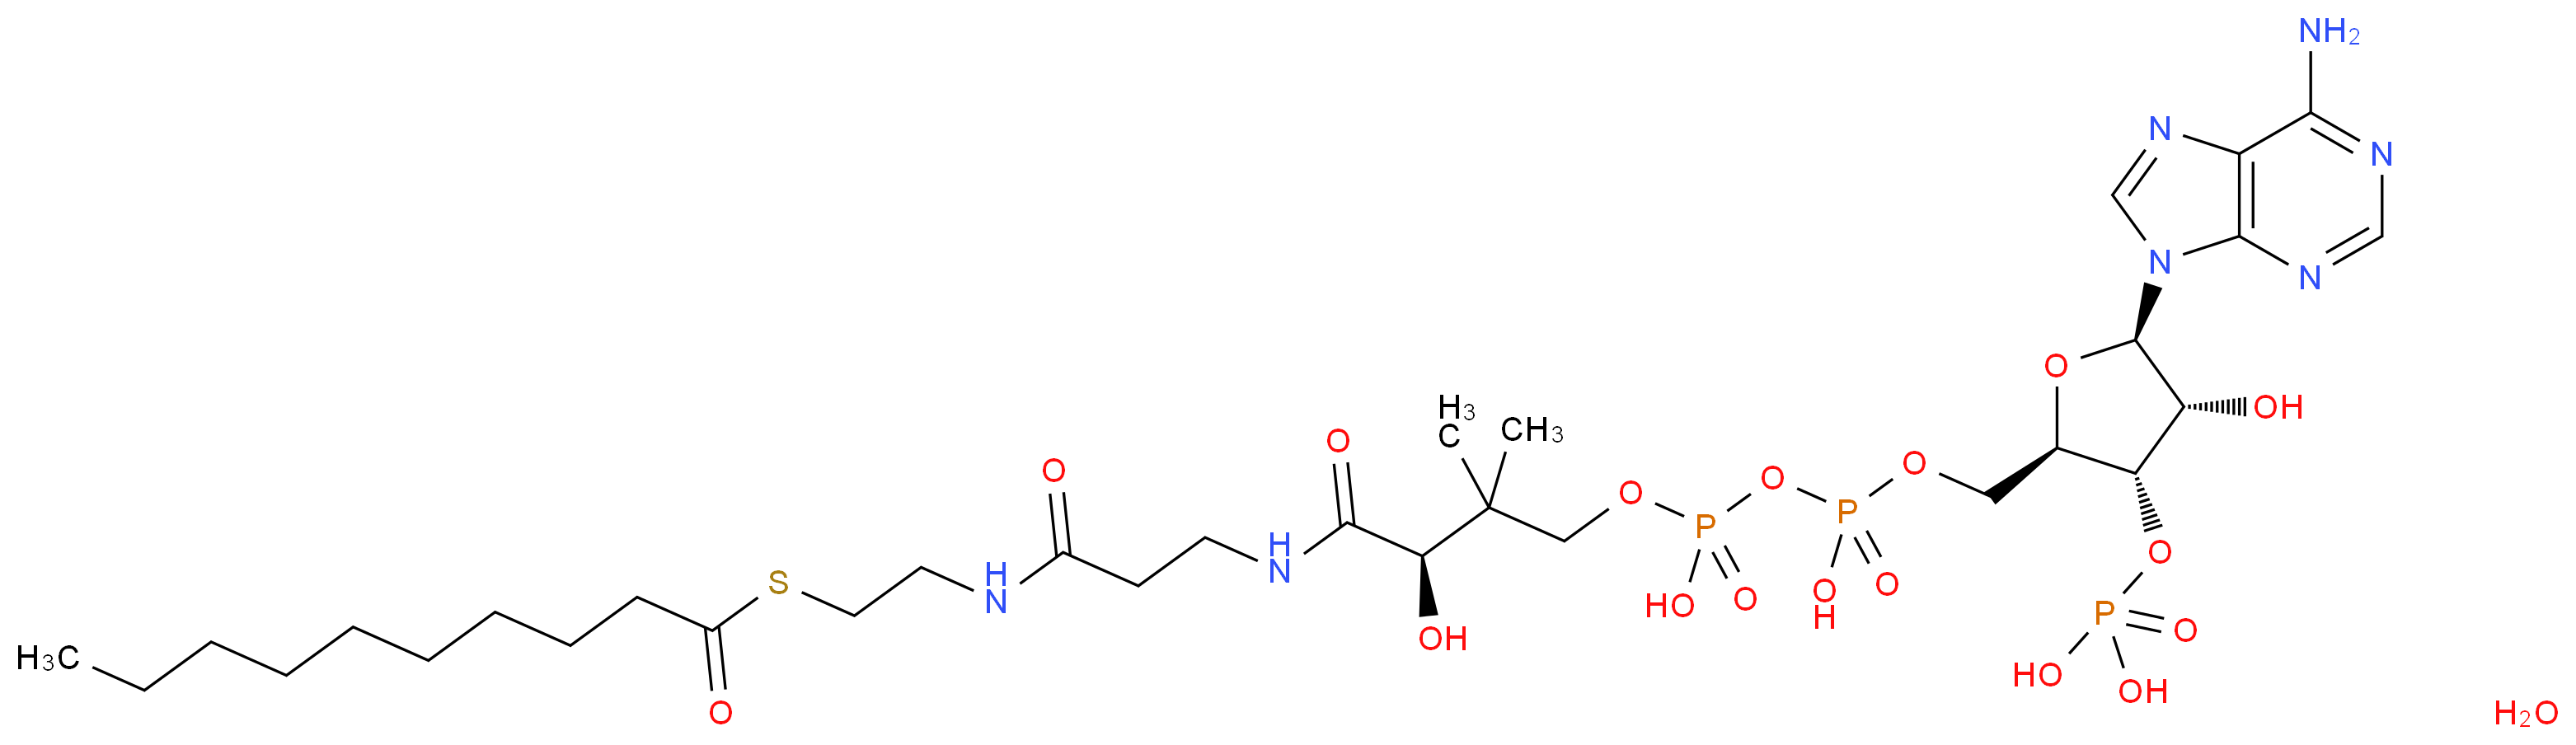 1264-57-9 molecular structure